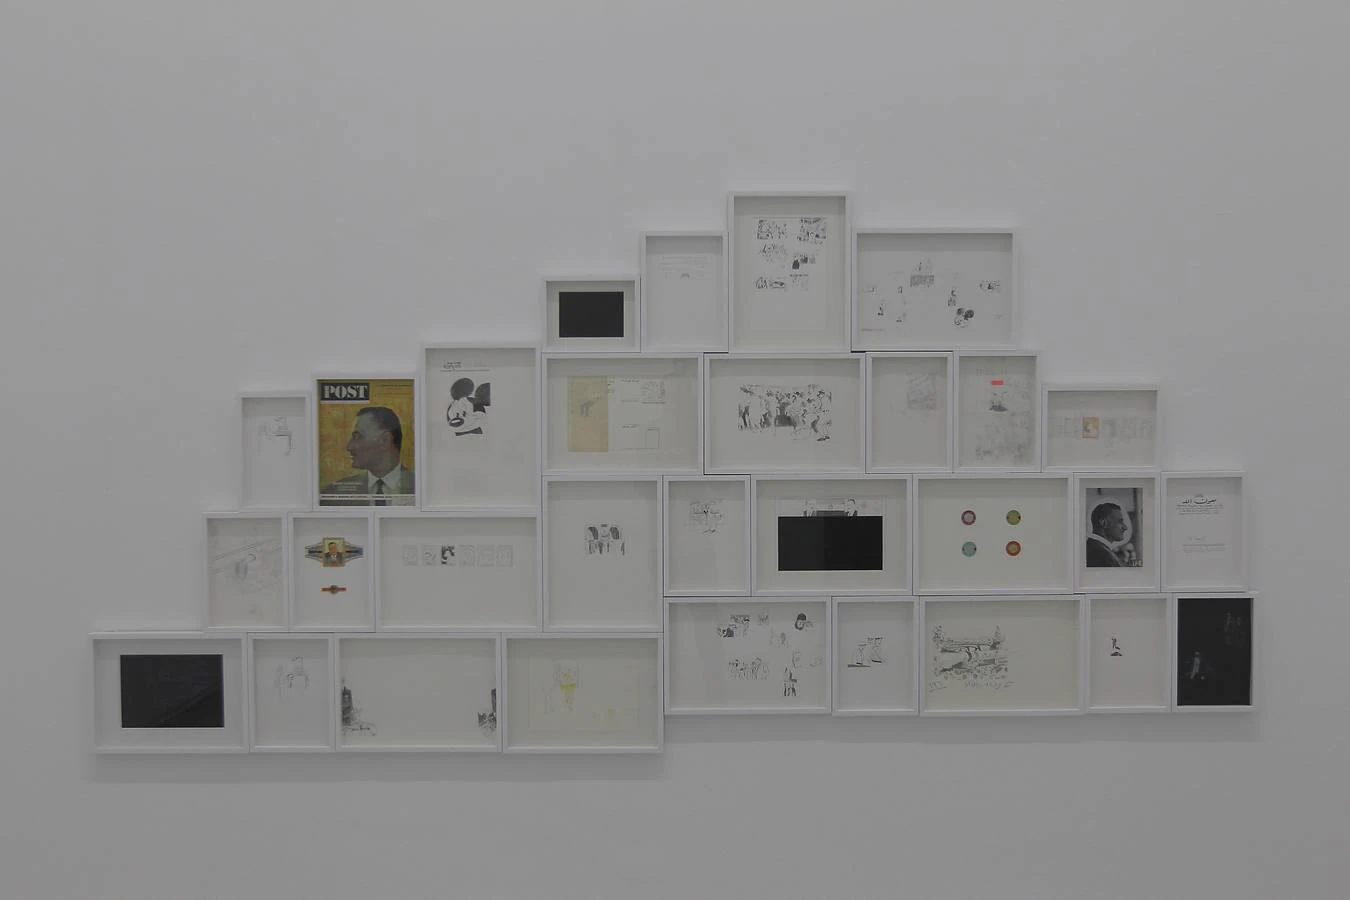 La exposición de Ala Younis en el CAAC, en imágenes